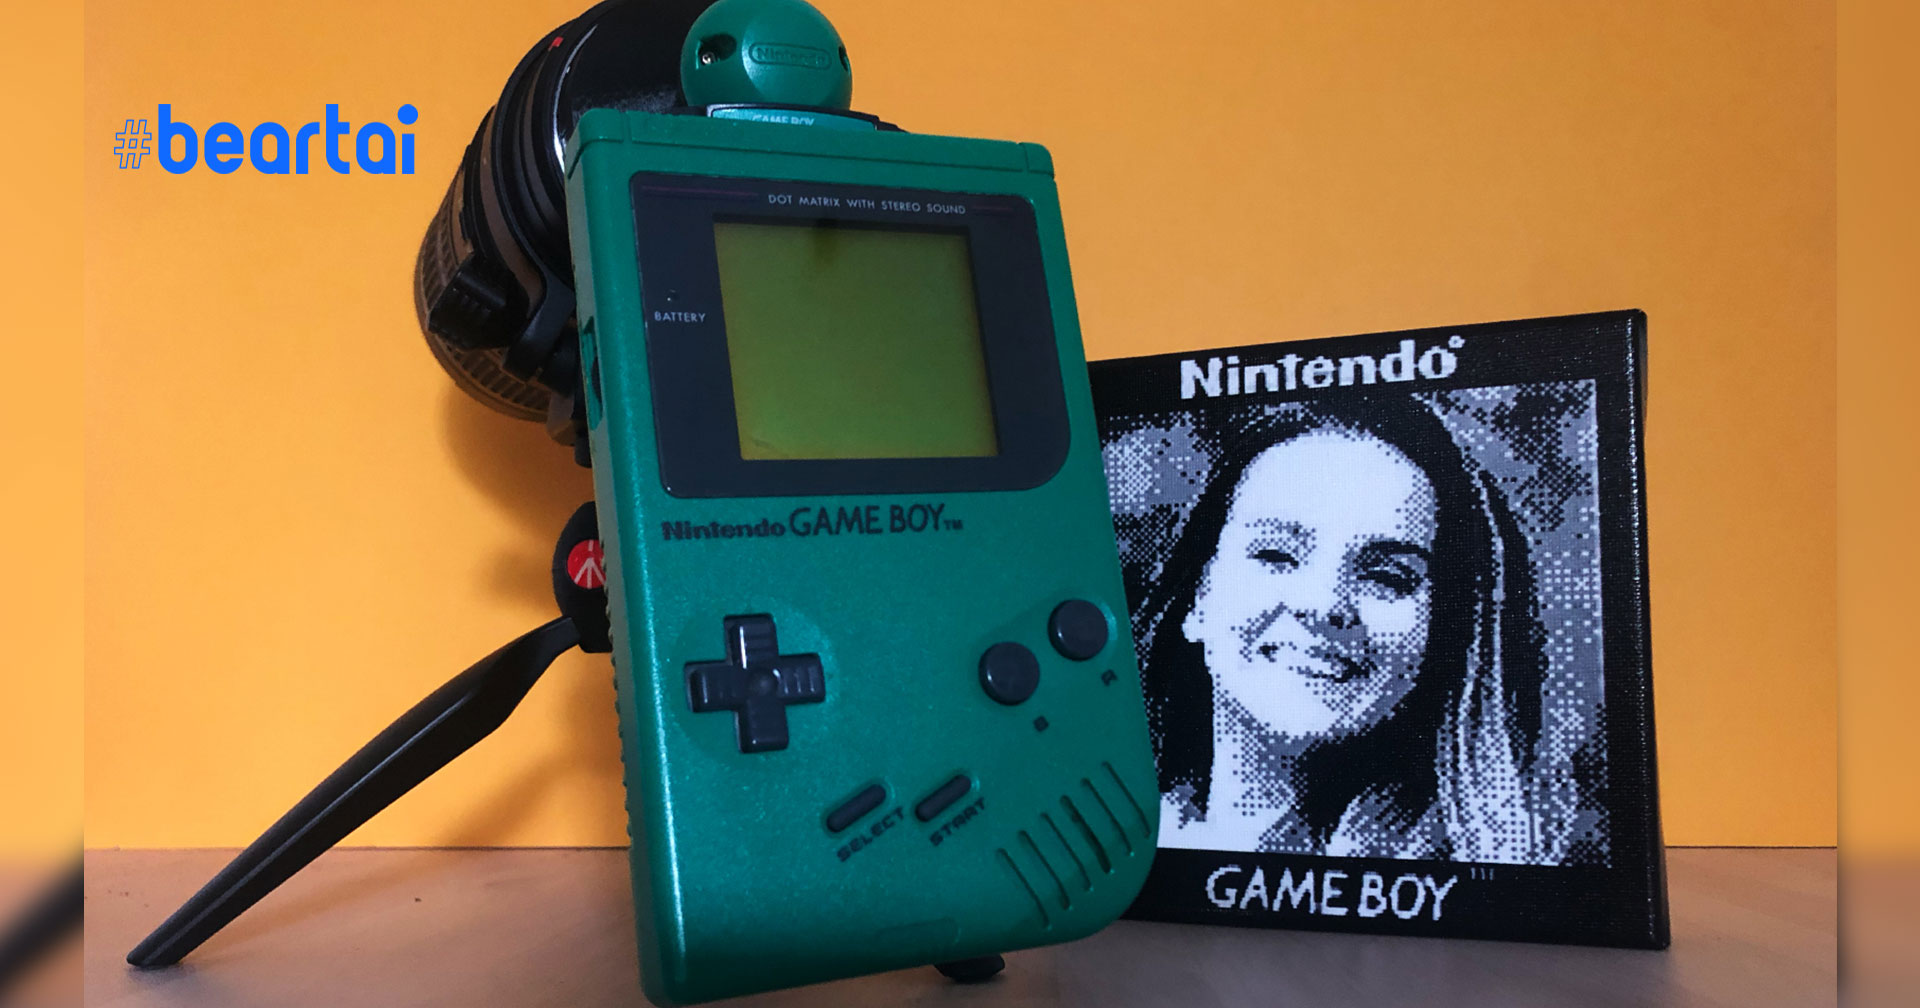 จะเป็นอย่างไร ถ้าเอา Game Boy Camera มาถ่าย Portrait ด้วยเลนส์ 70-200mm ของกล้อง DSLR!